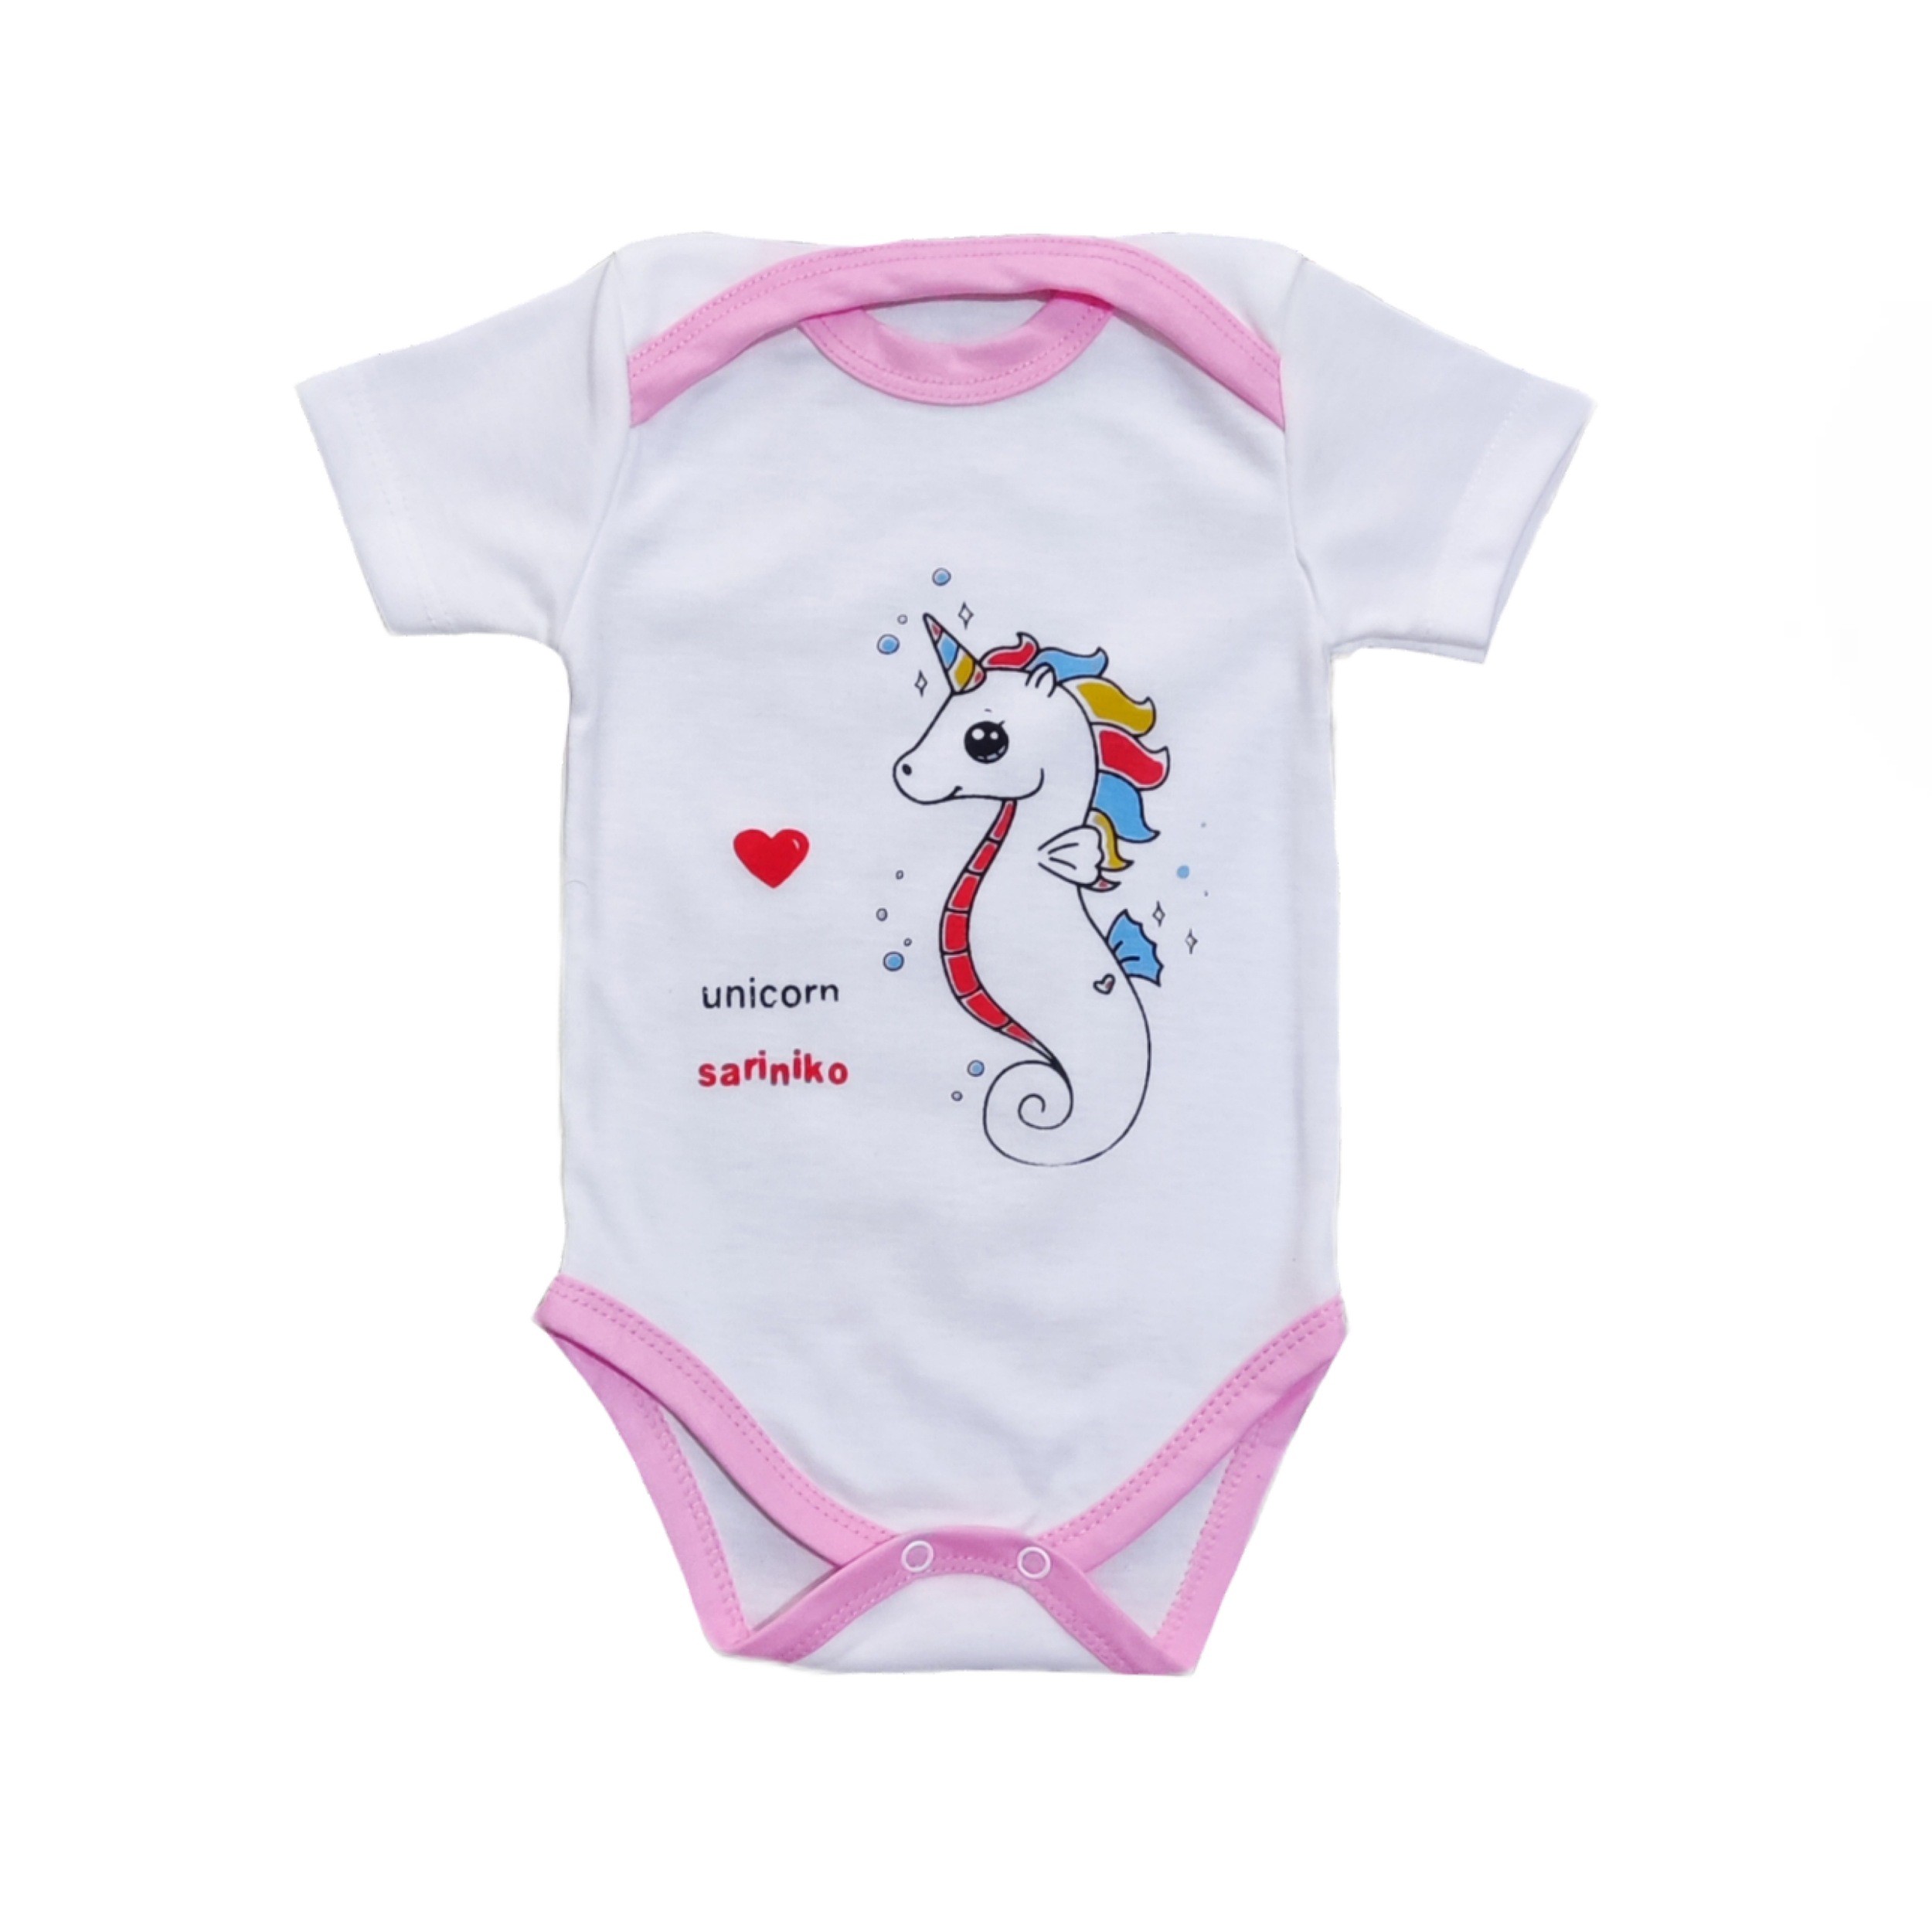 ست 3 تکه لباس نوزادی سرینیکو مدل Unicorn کد B03 -  - 3